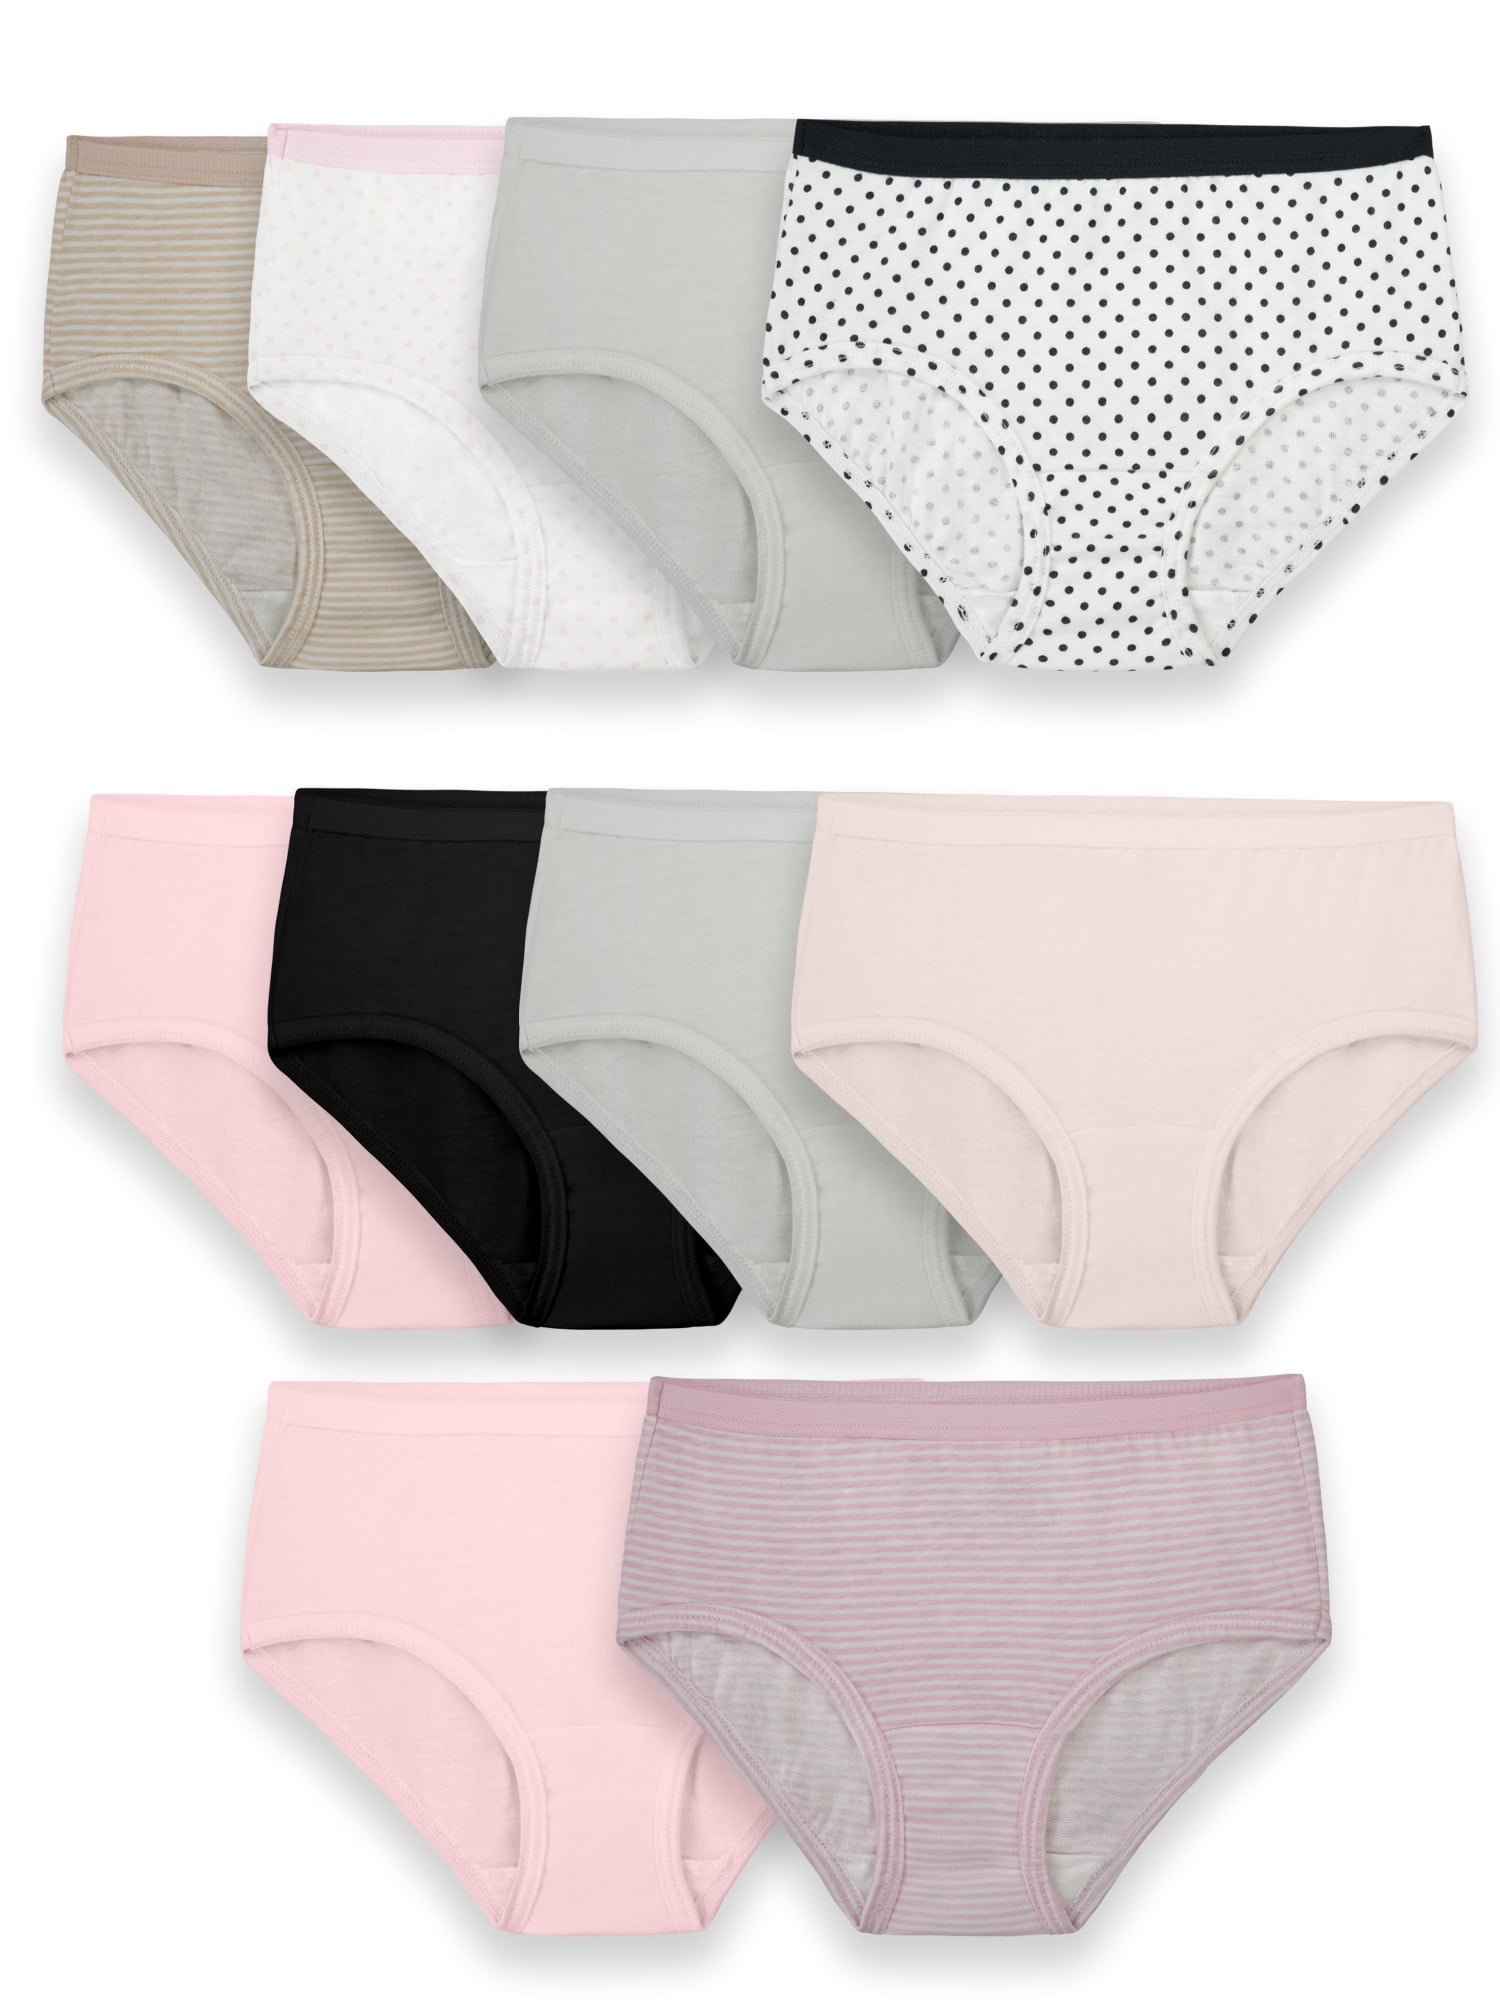 Fruit of the Loom Girls' Cotton Brief Underwear, 10 Pack Panties